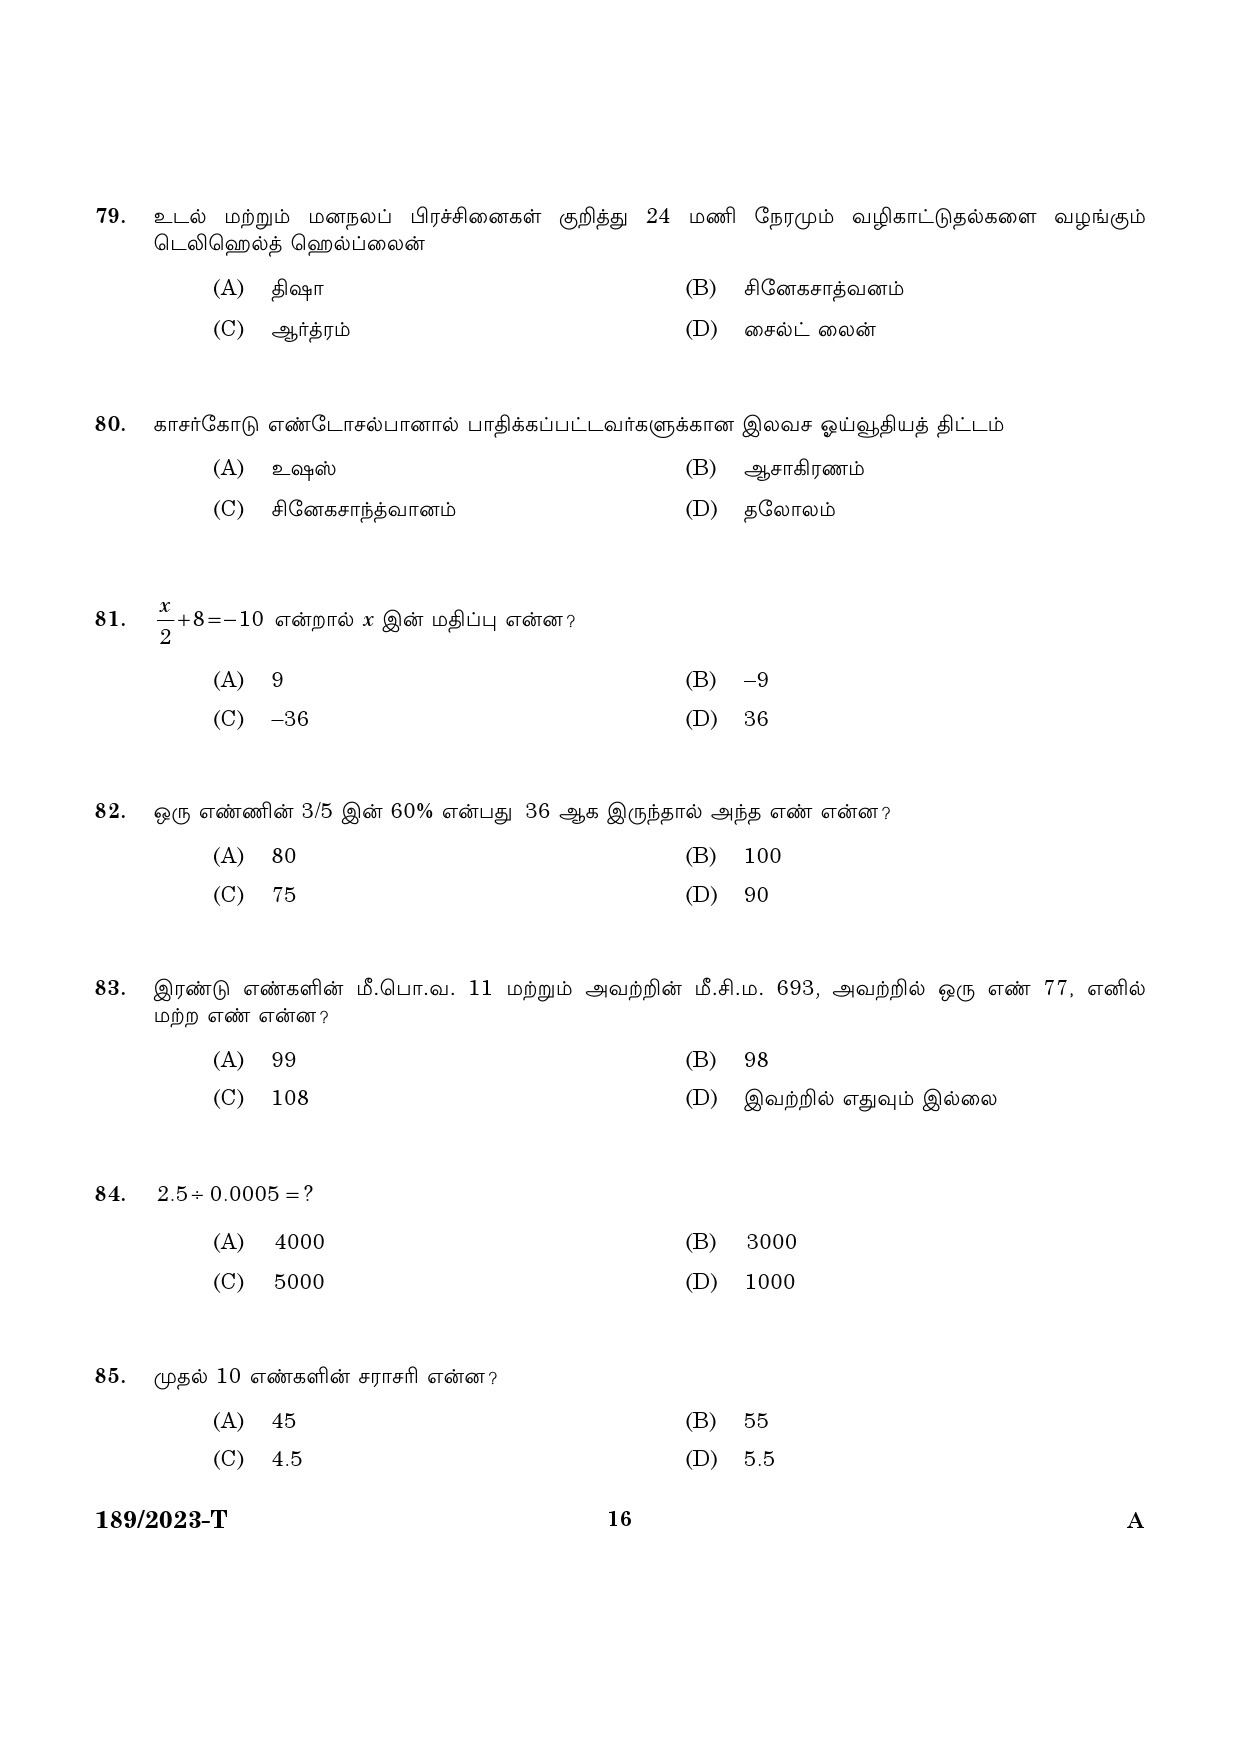 KPSC LGS Tamil Exam 2023 Code 1892023 T 14